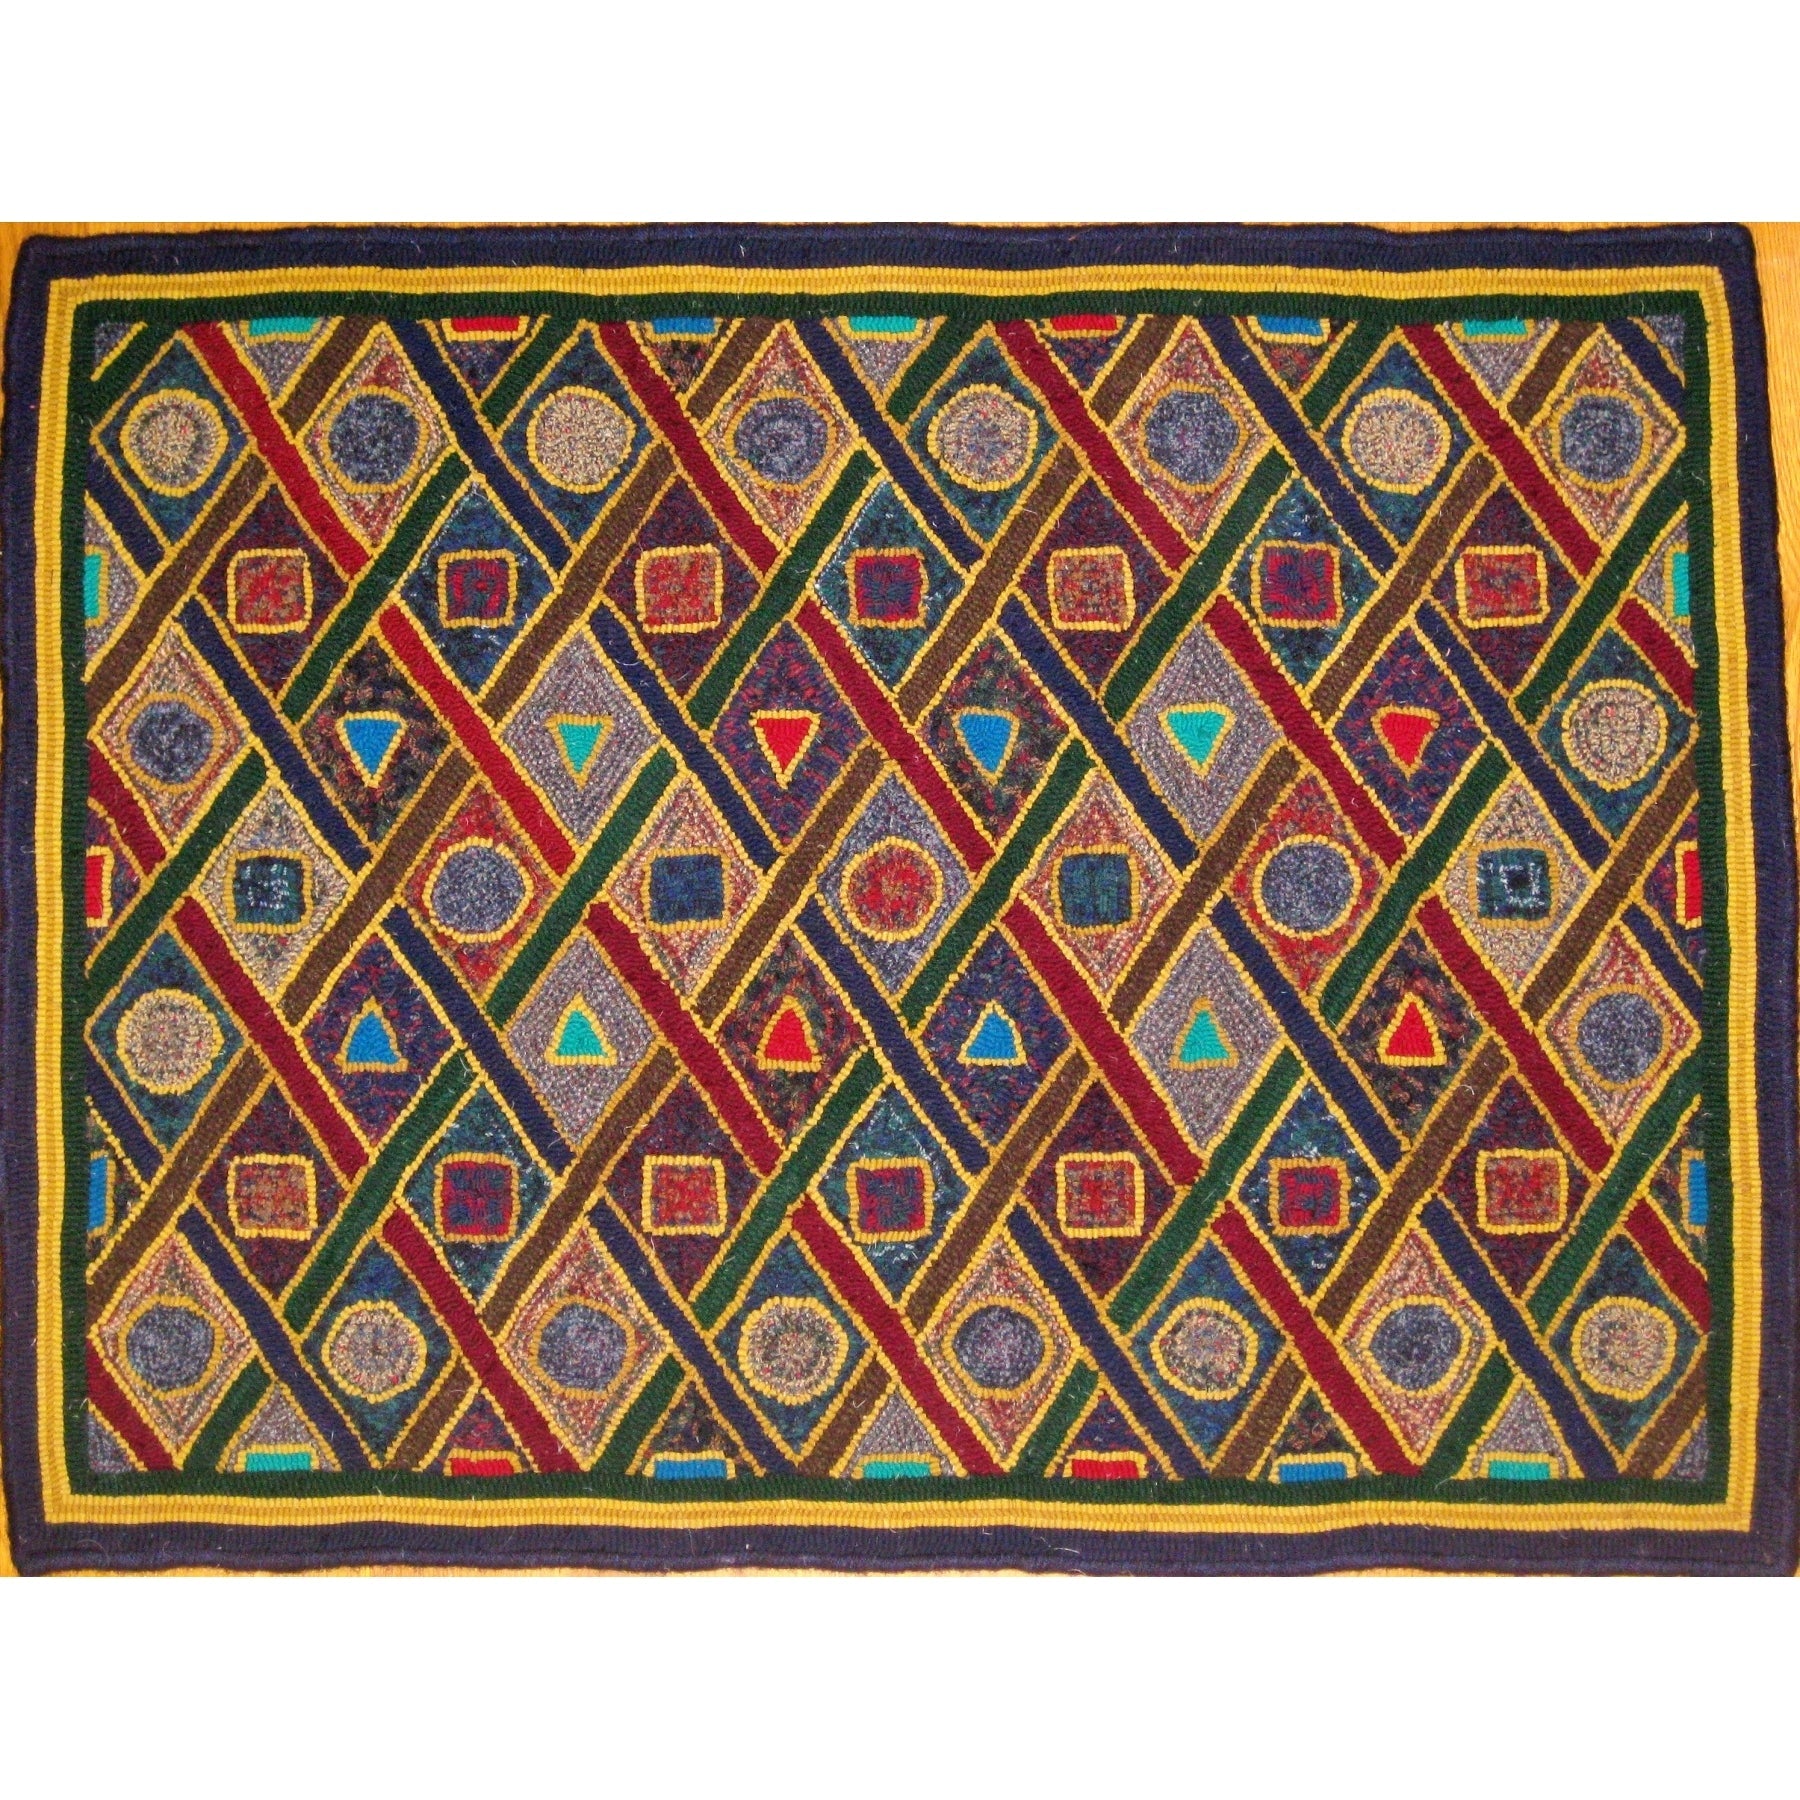 Geometric Lattice, rug hooked by John Leonard